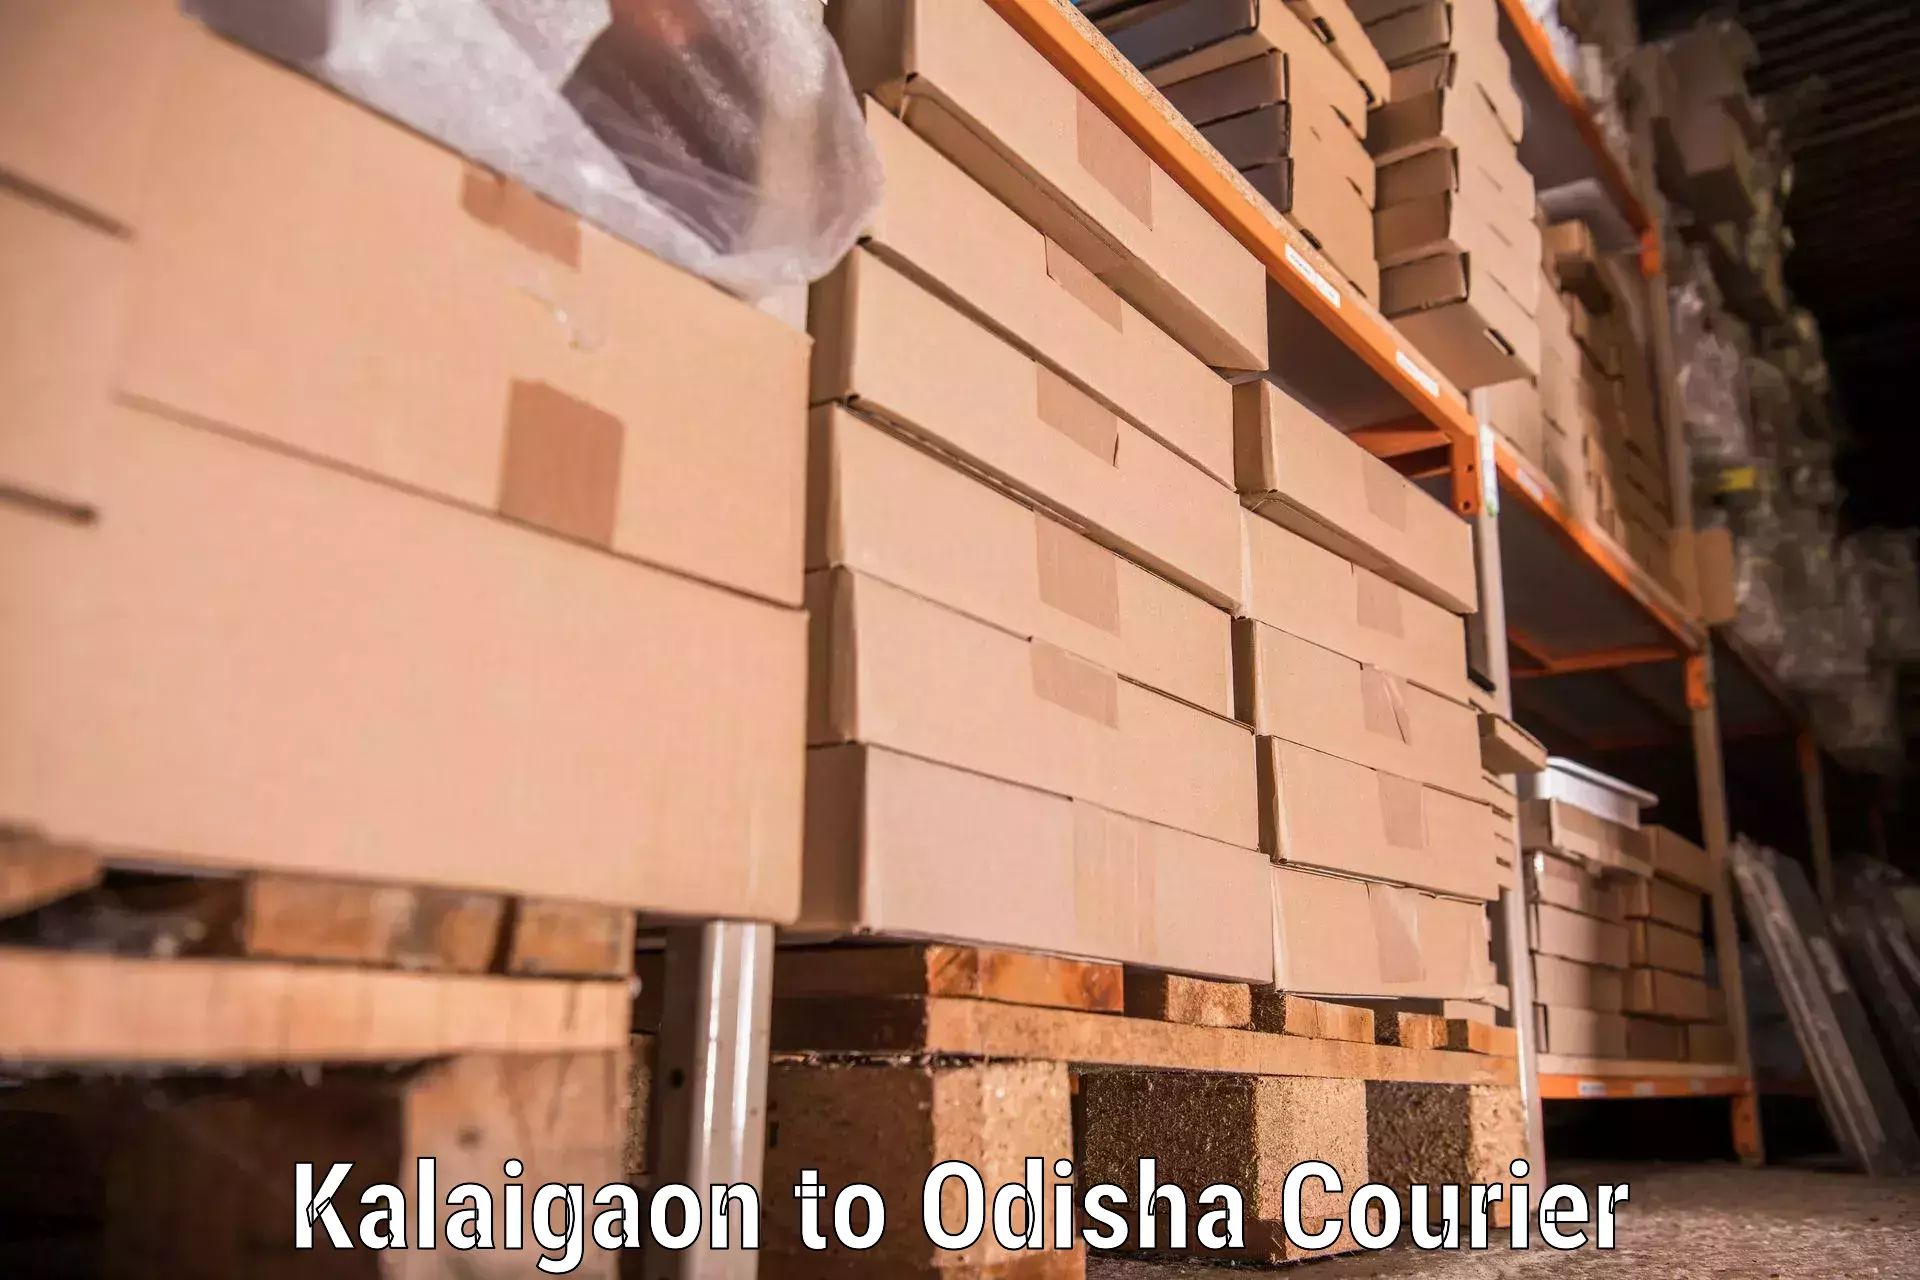 Moving and storage services Kalaigaon to Kuchinda